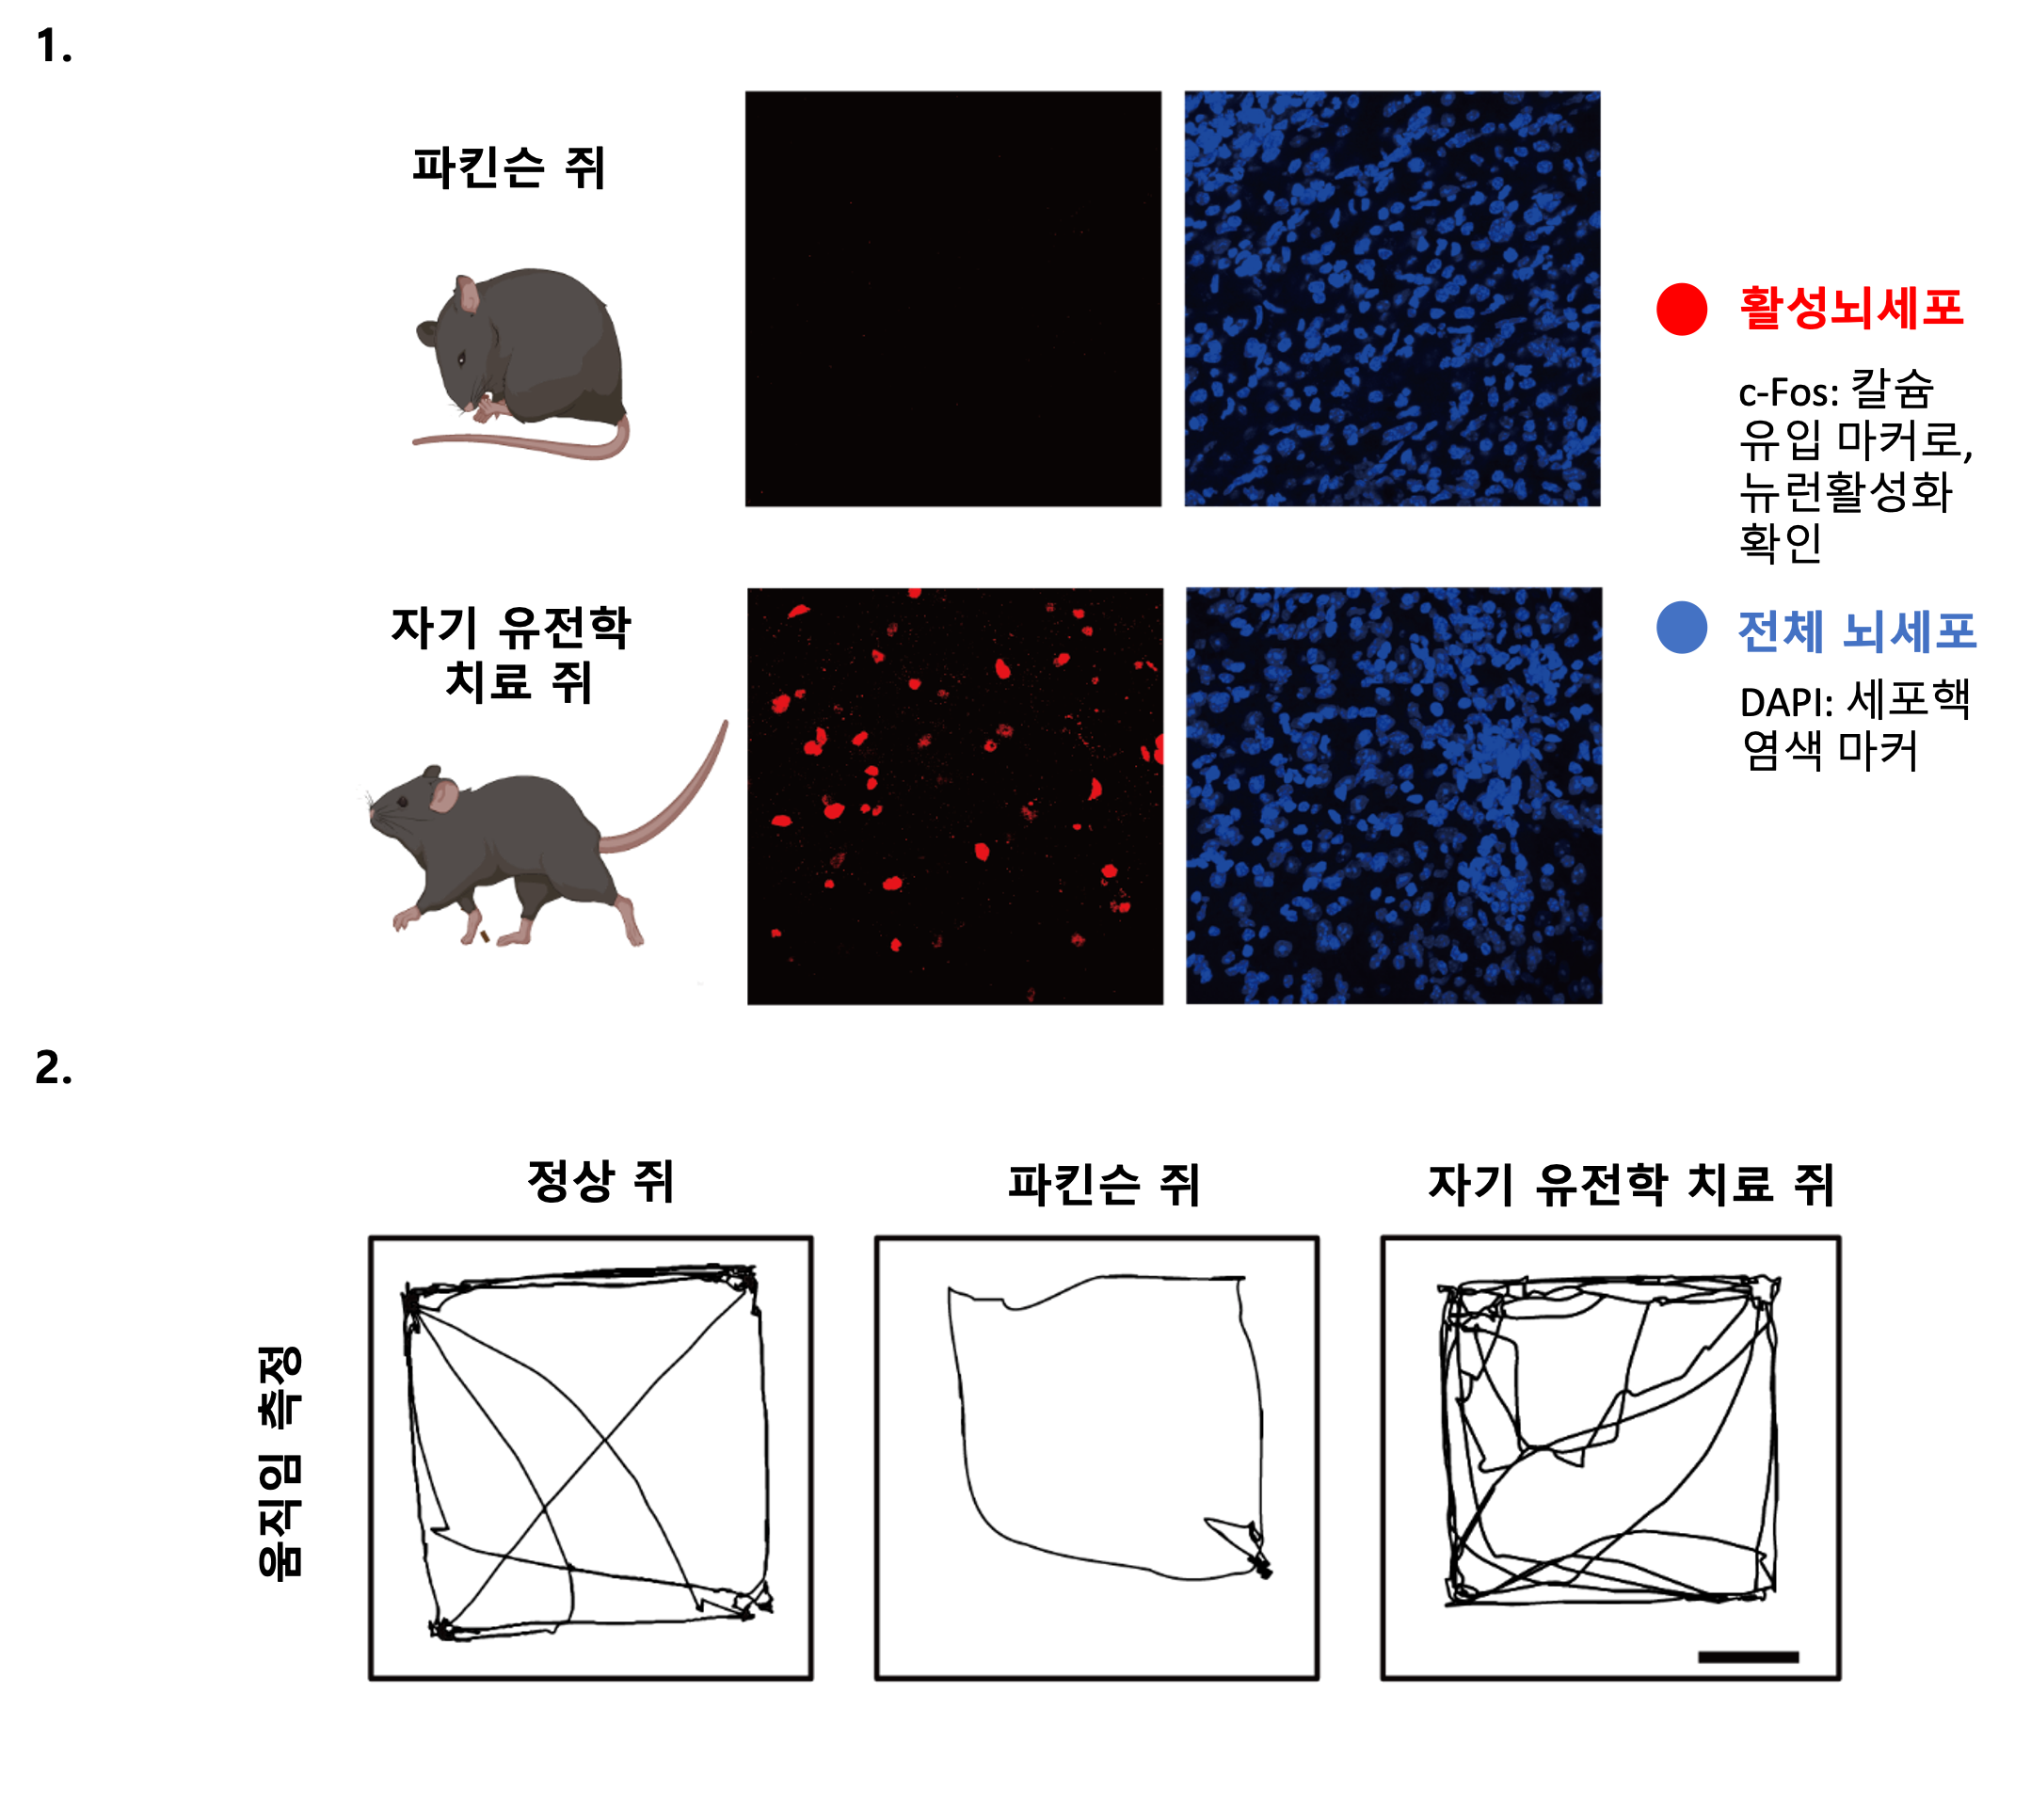 [그림2] 나노-자기유전학을 이용한 DBS의 파킨슨병 운동 장애 치료 효과
            1. 나노-자기유전학 DBS에 의한 뇌 심부 시상하핵(Subthalamic Nucleus) 지역의 신경세포 활성화 증가. 자기장 자극에 의해 나노입자가 전달한 힘이 피에조-1을 열고 신경세포의 활동을 증가시켜 핵 내 c-Fos 신호를 증가시킴.
            2. 파킨슨 쥐는 운동성 장애가 있어 움직임이 적음. 나노-자기유전학 DBS 치료를 받은 파킨슨 쥐는 정상 쥐와 비슷한 수준의 활발한 움직임을 보임. 